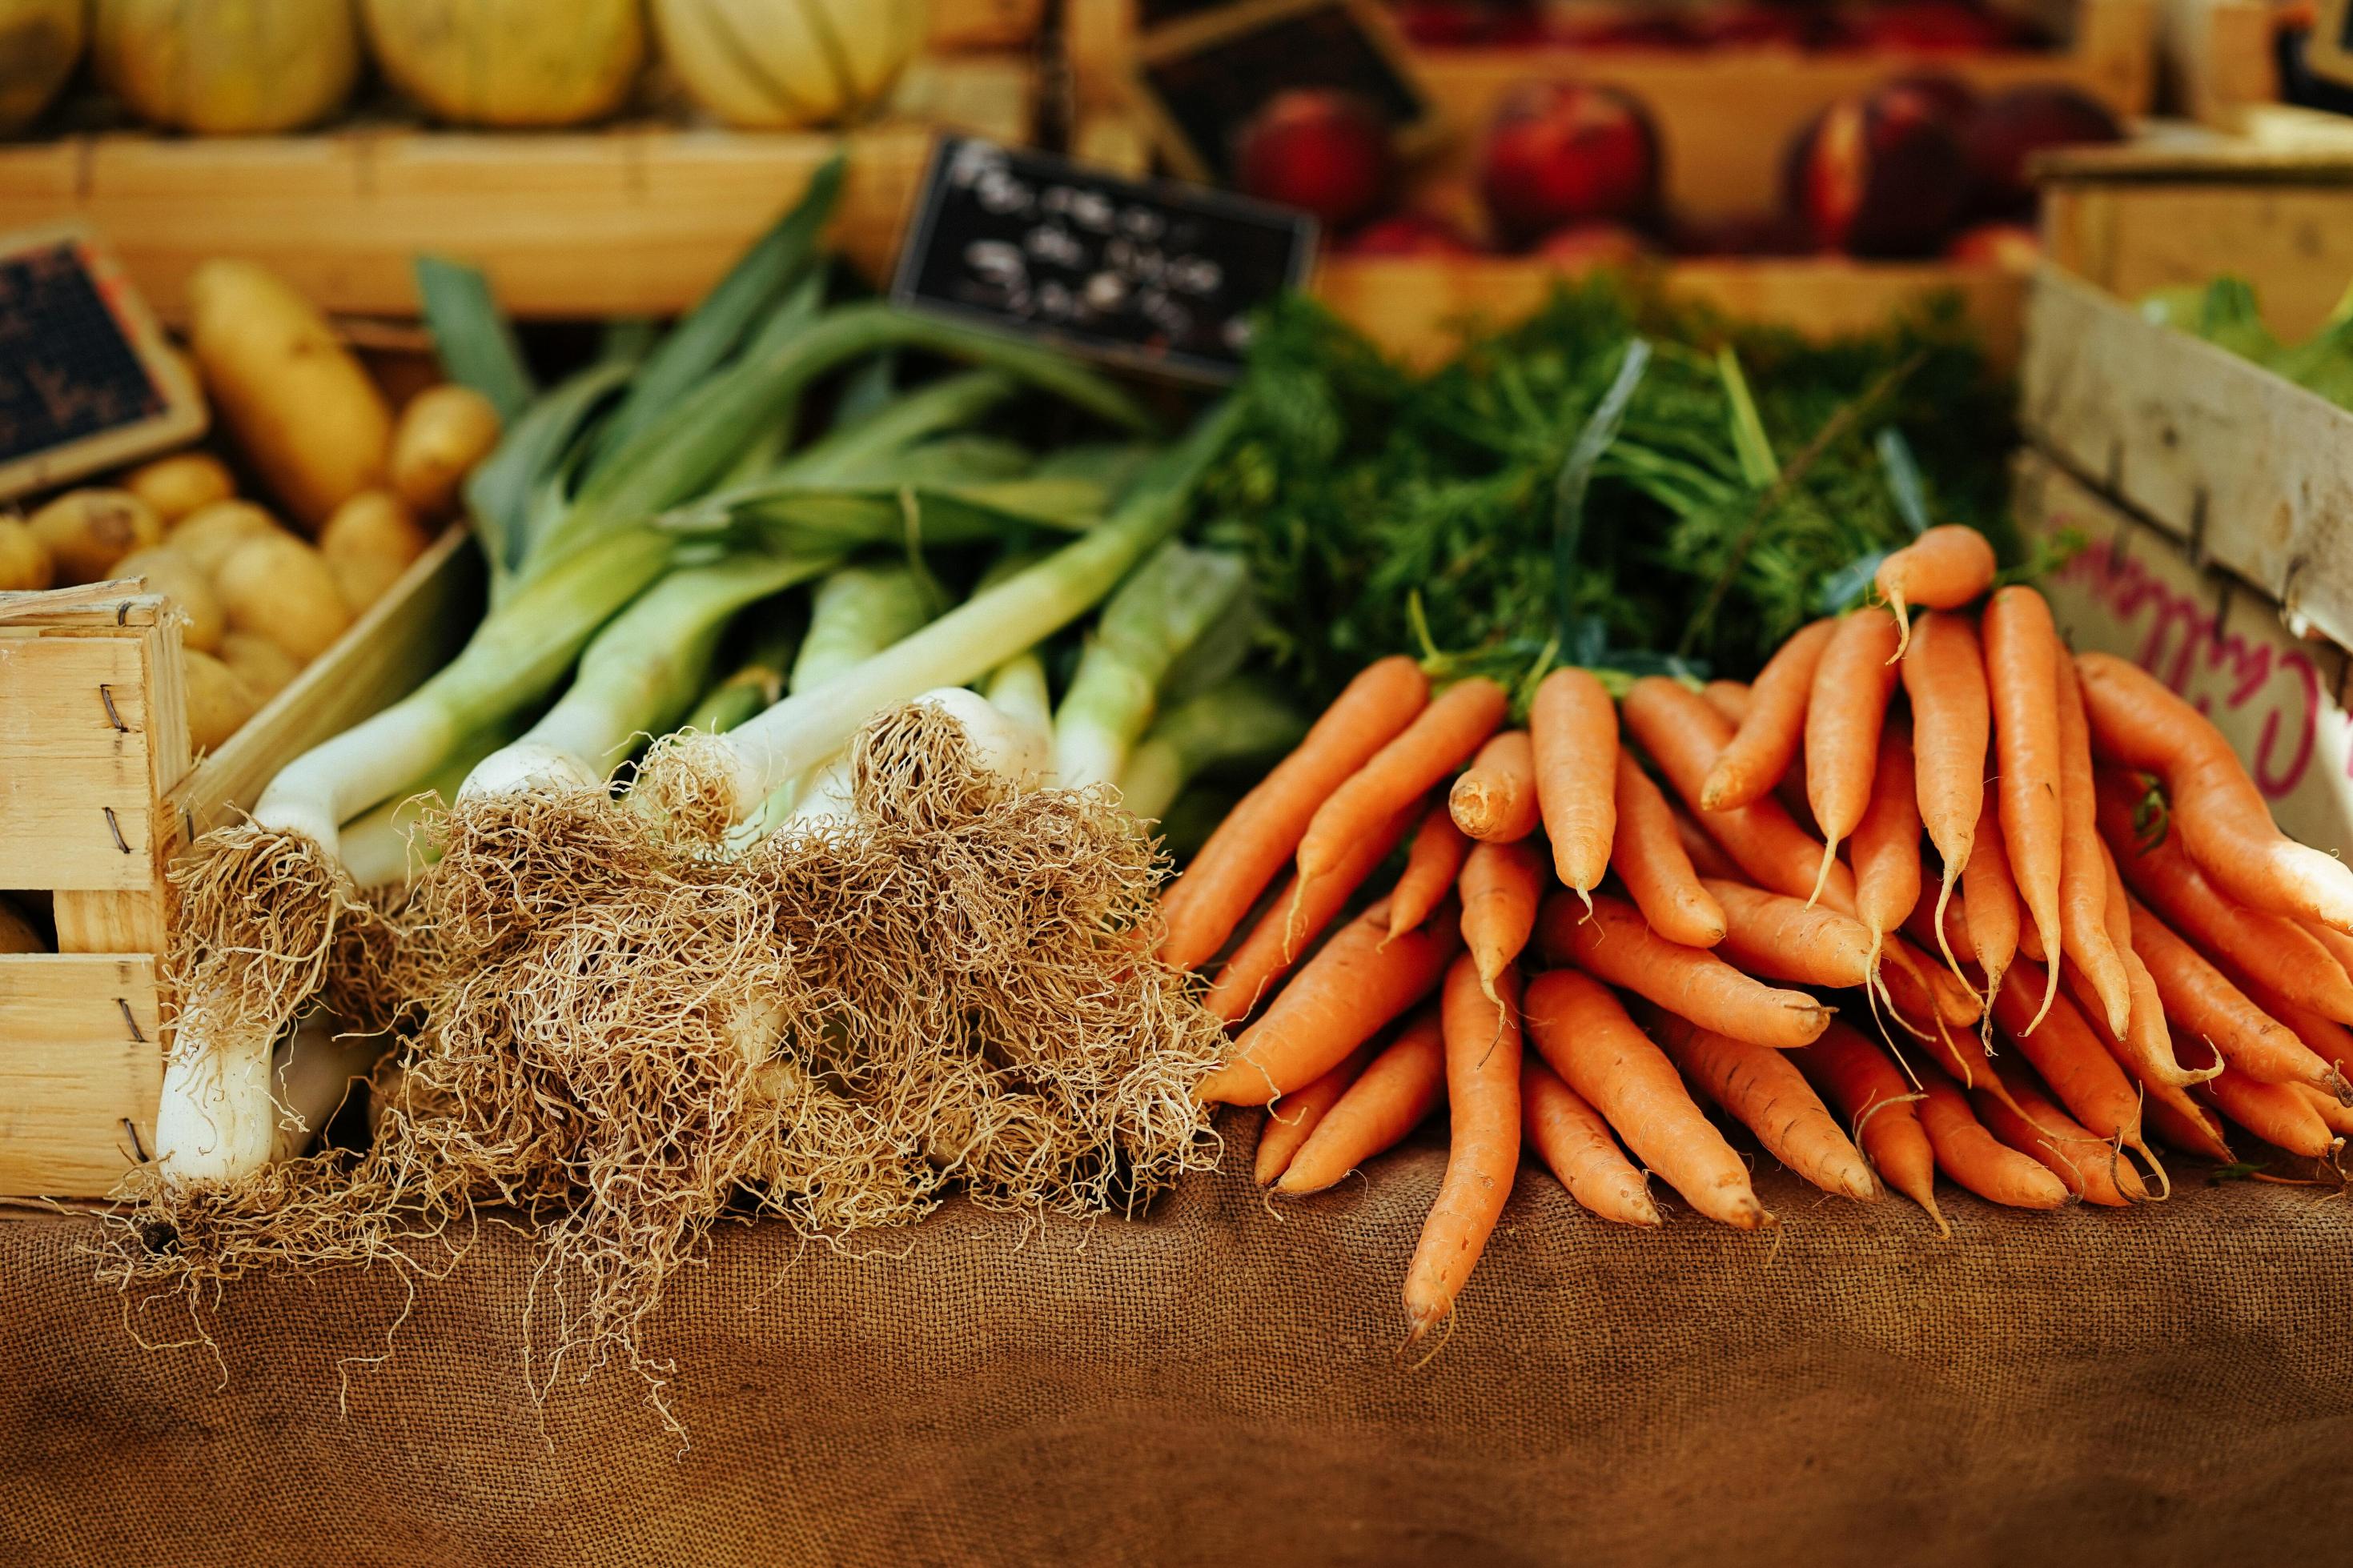 Lauch und Karotten liegen auf einem Wochenmarkt aus. Sogenannte alte Obst- oder Gemüsesorten haben viele gesundheitliche Vorteile verglichen mit konventionellen Züchtungen.